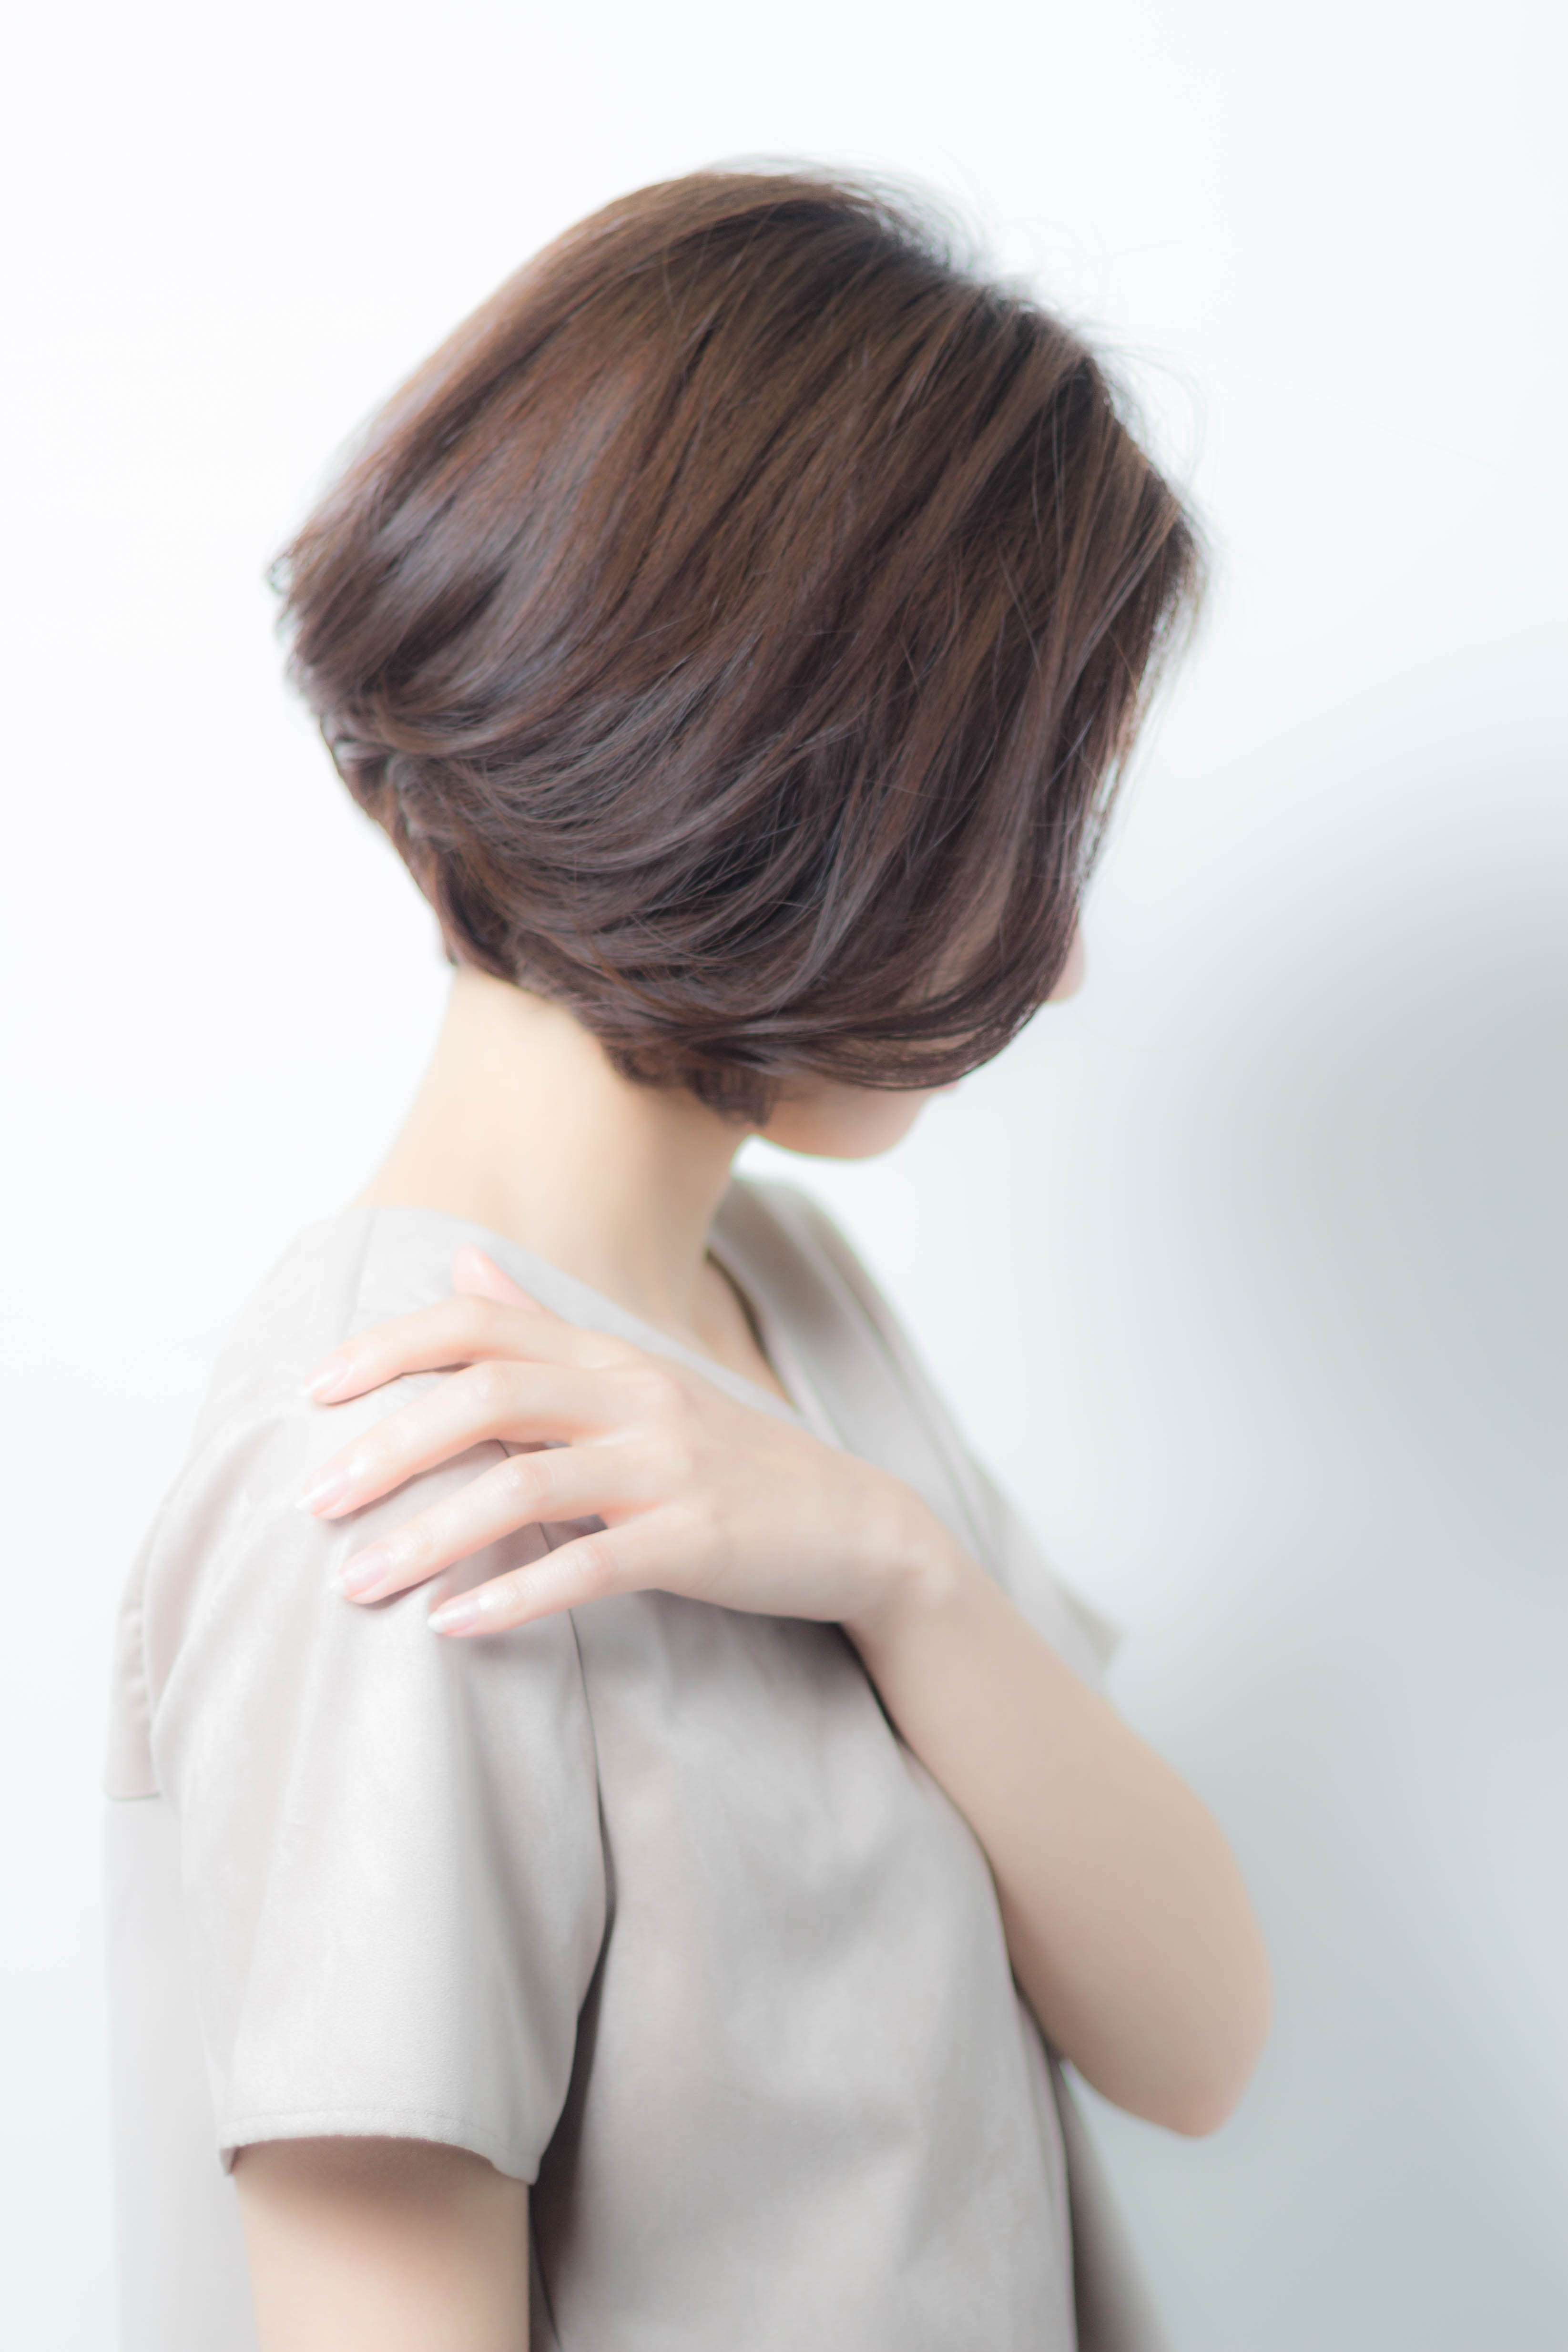 低温デジタルパーマとは メリットとおすすめの髪型をご紹介 似合わせカットが上手い東京の美容師 美容室minx銀座 蛭田のブログ